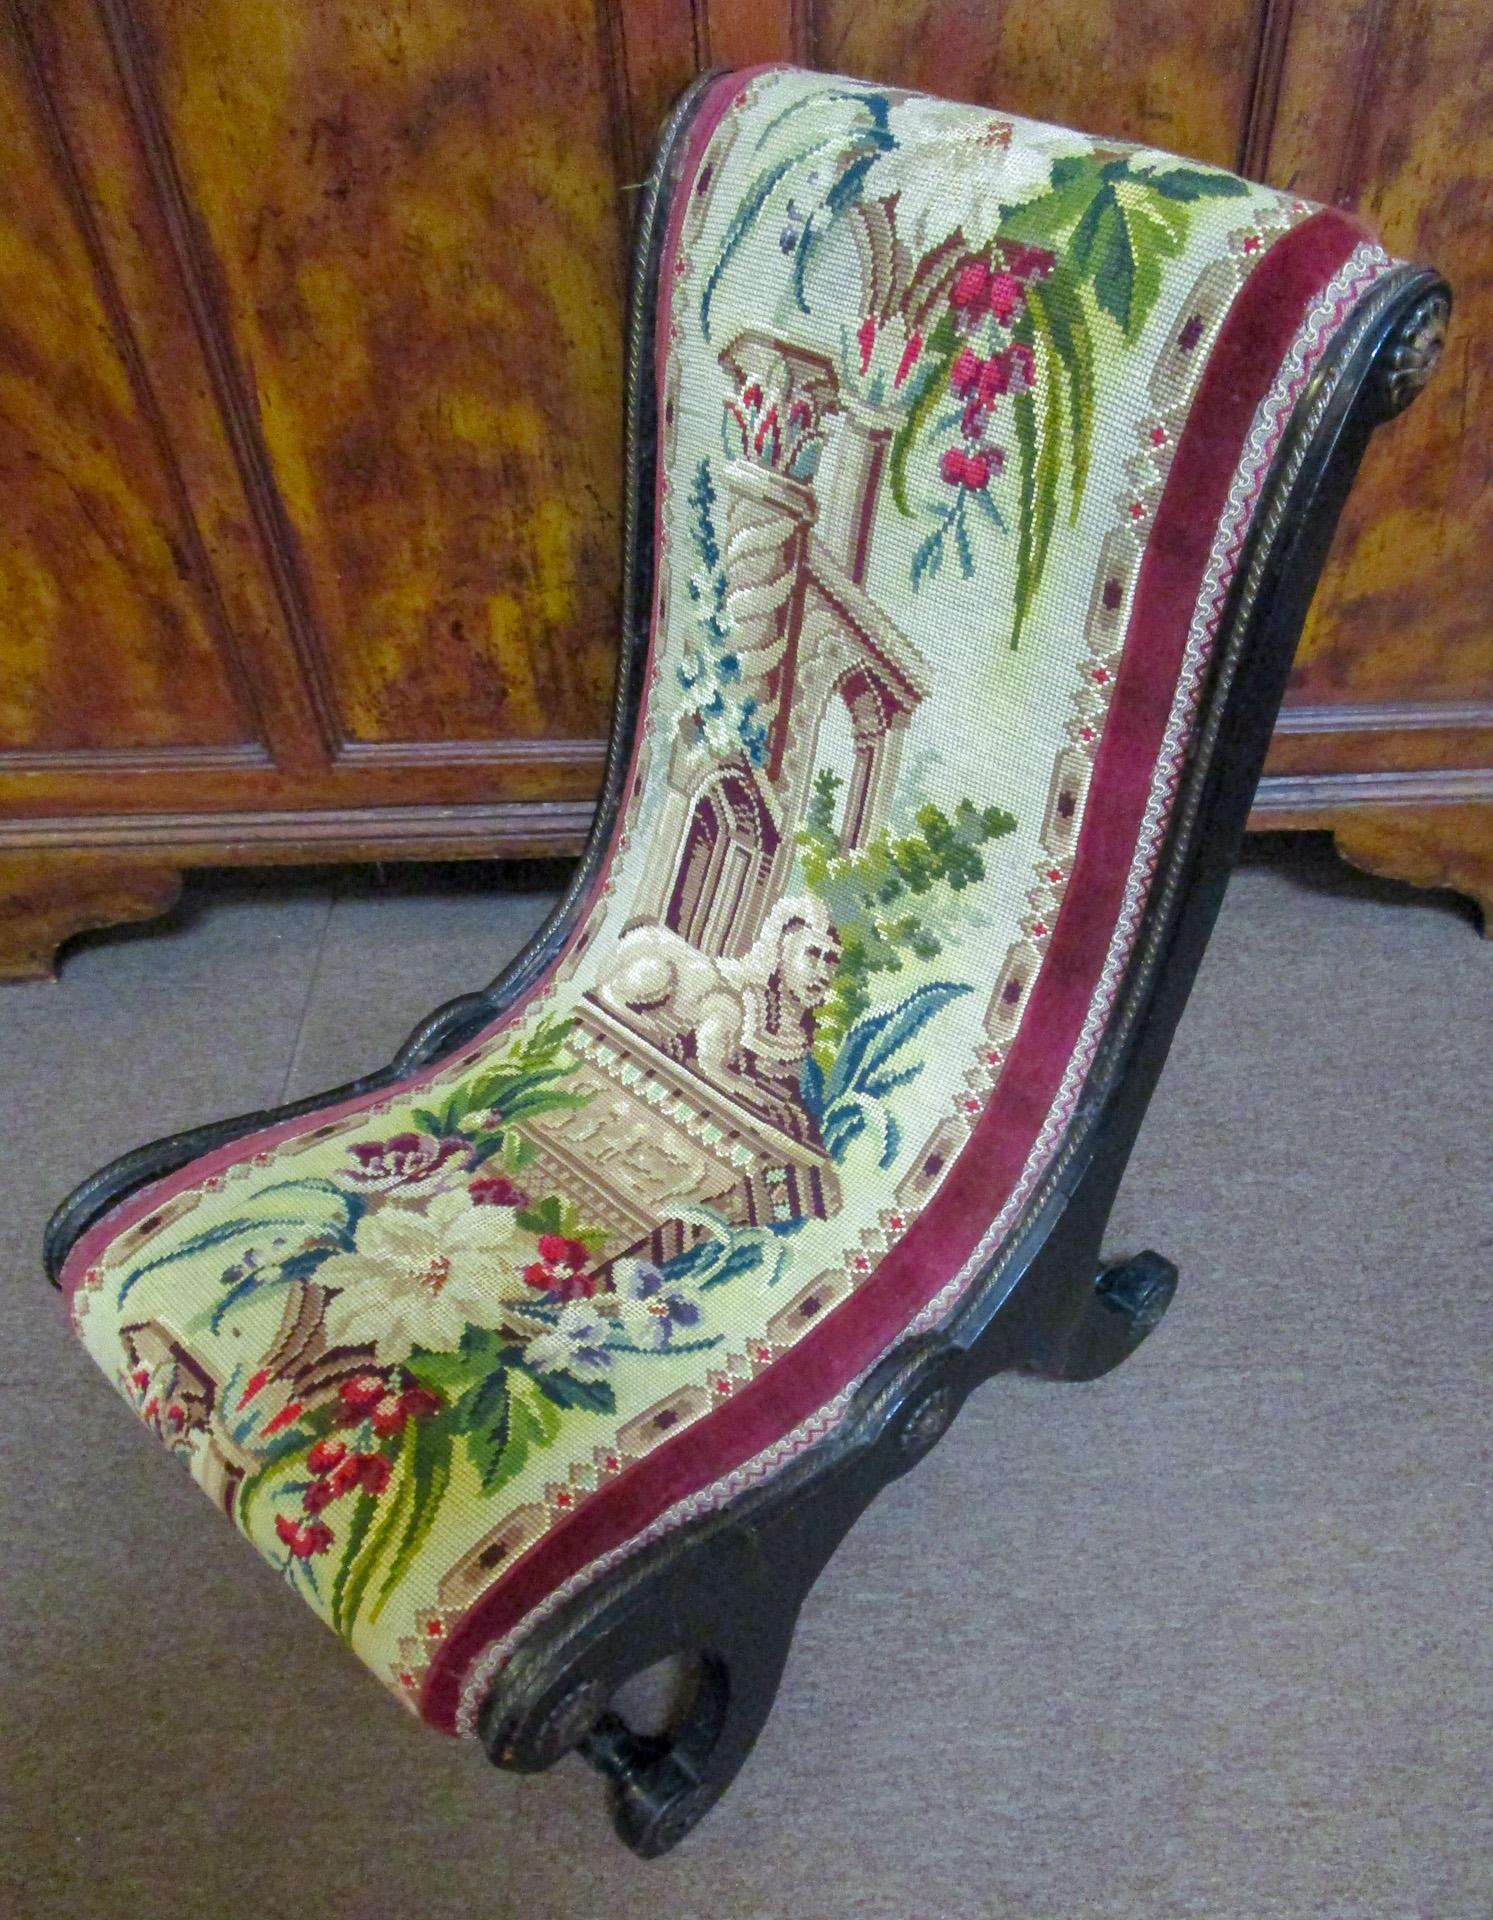 Cette paire très rare de hauts fauteuils Napoléon III prie dieu présente une structure en acajou ébonisé, une tapisserie à l'aiguille détaillée d'origine, des châssis tournés et dix rosettes en laiton sur chaque fauteuil, ainsi qu'une bande en